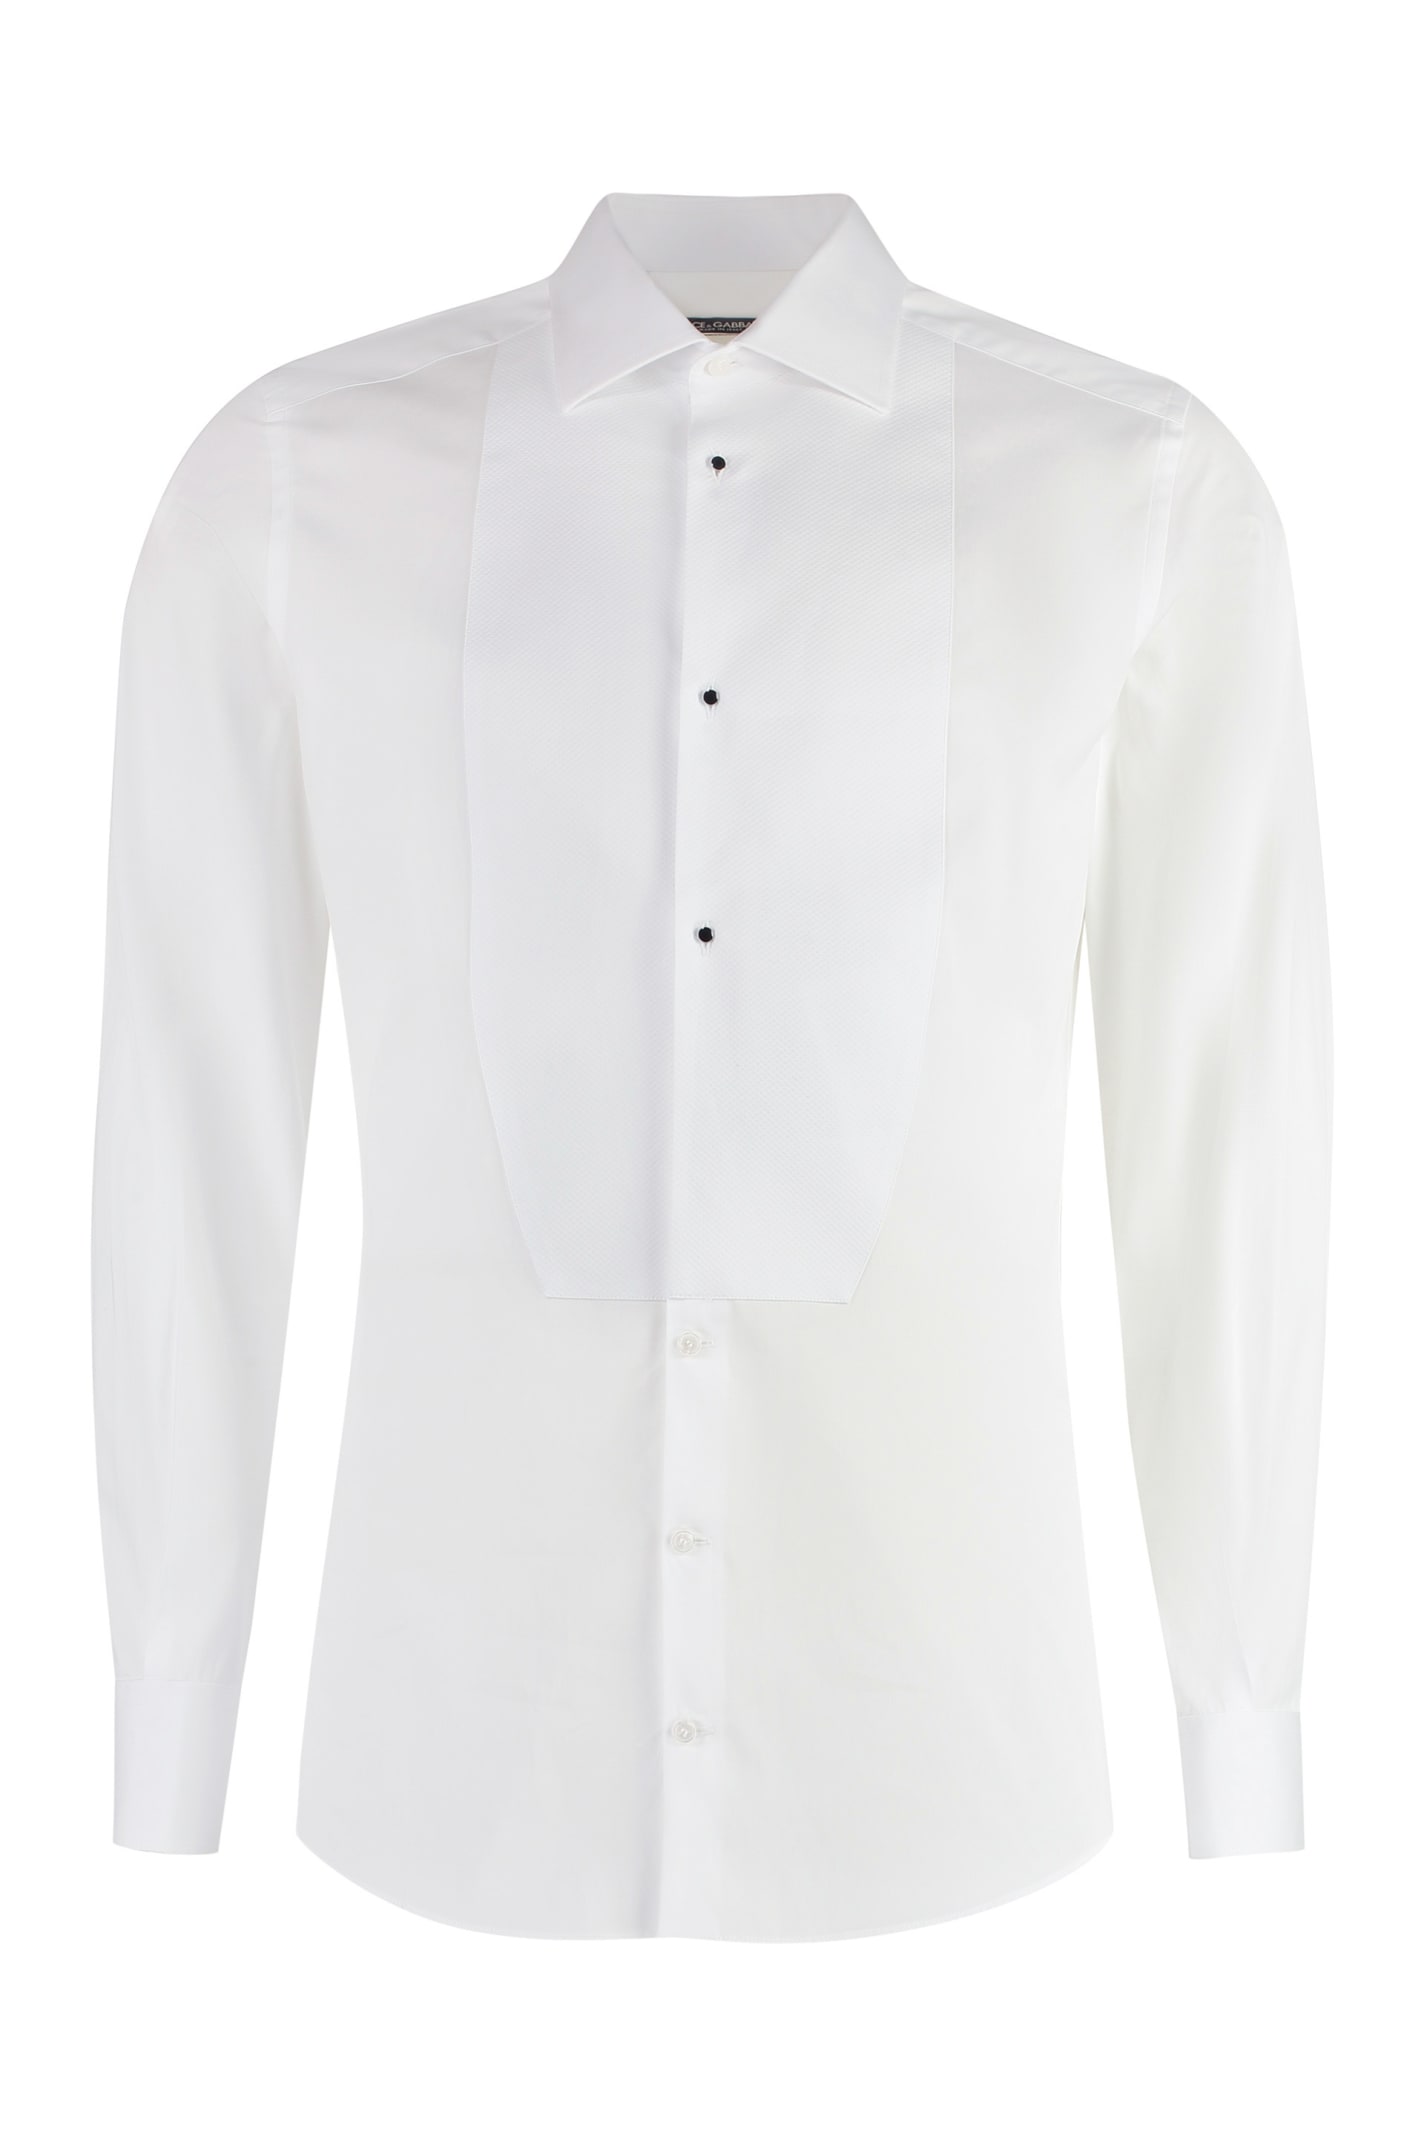 Dolce & Gabbana Poplin Tuxedo Shirt In White